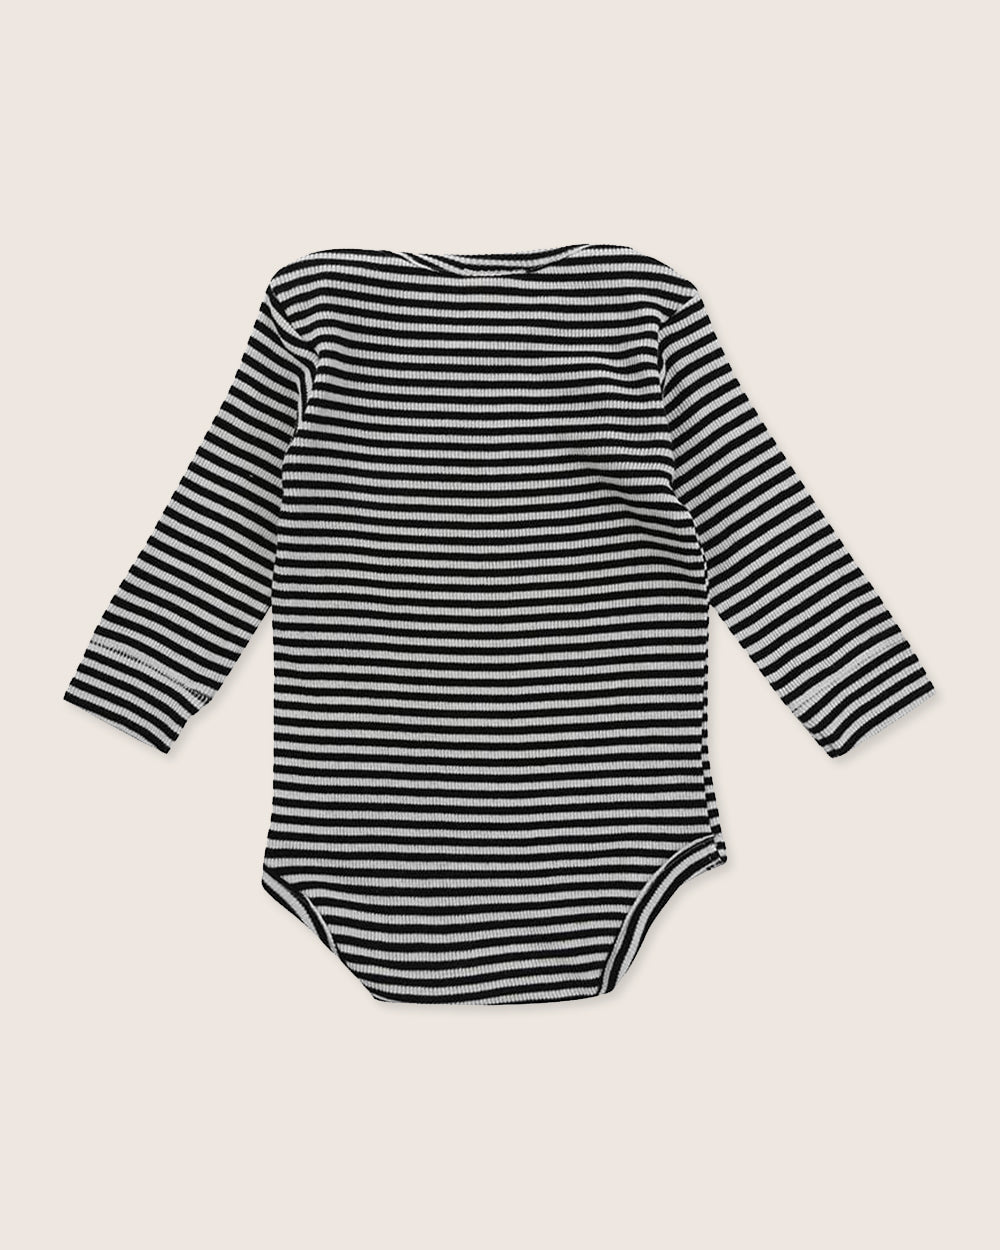 Black & white baby bodysuit